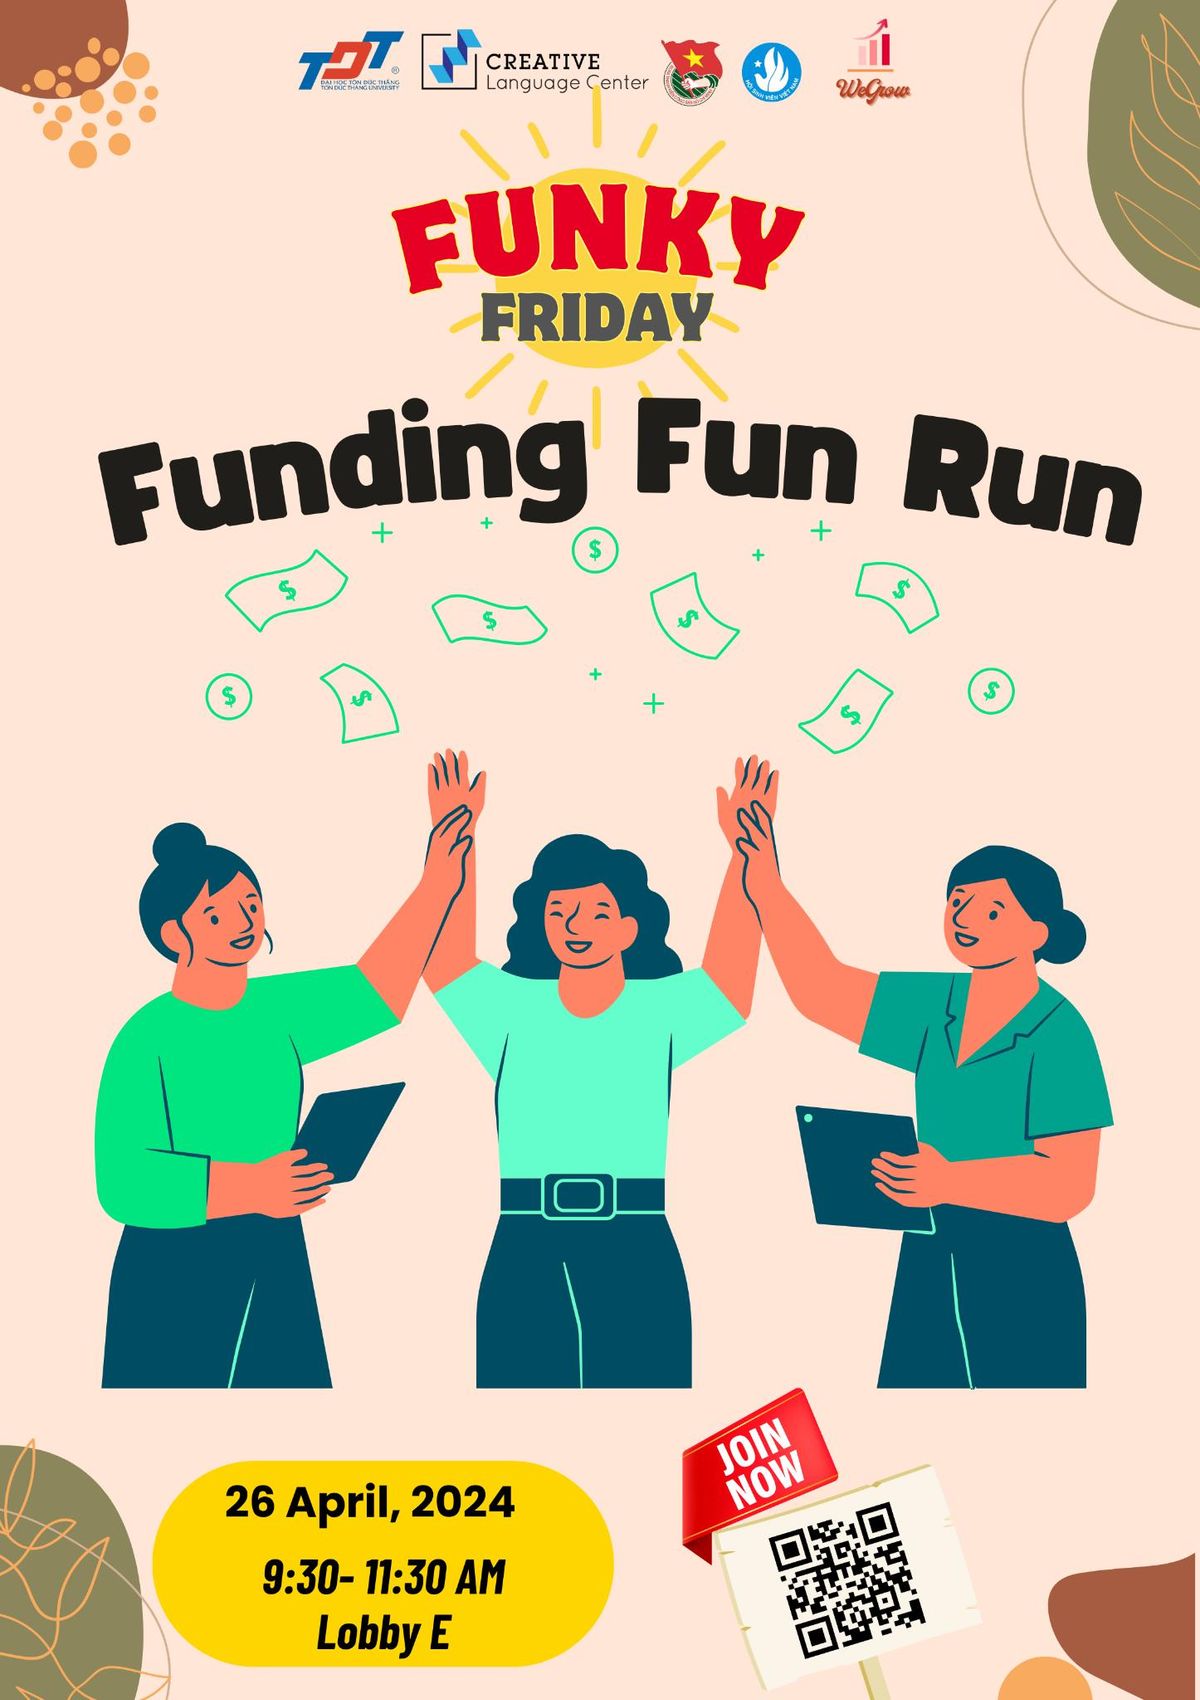 Funding Fun Run